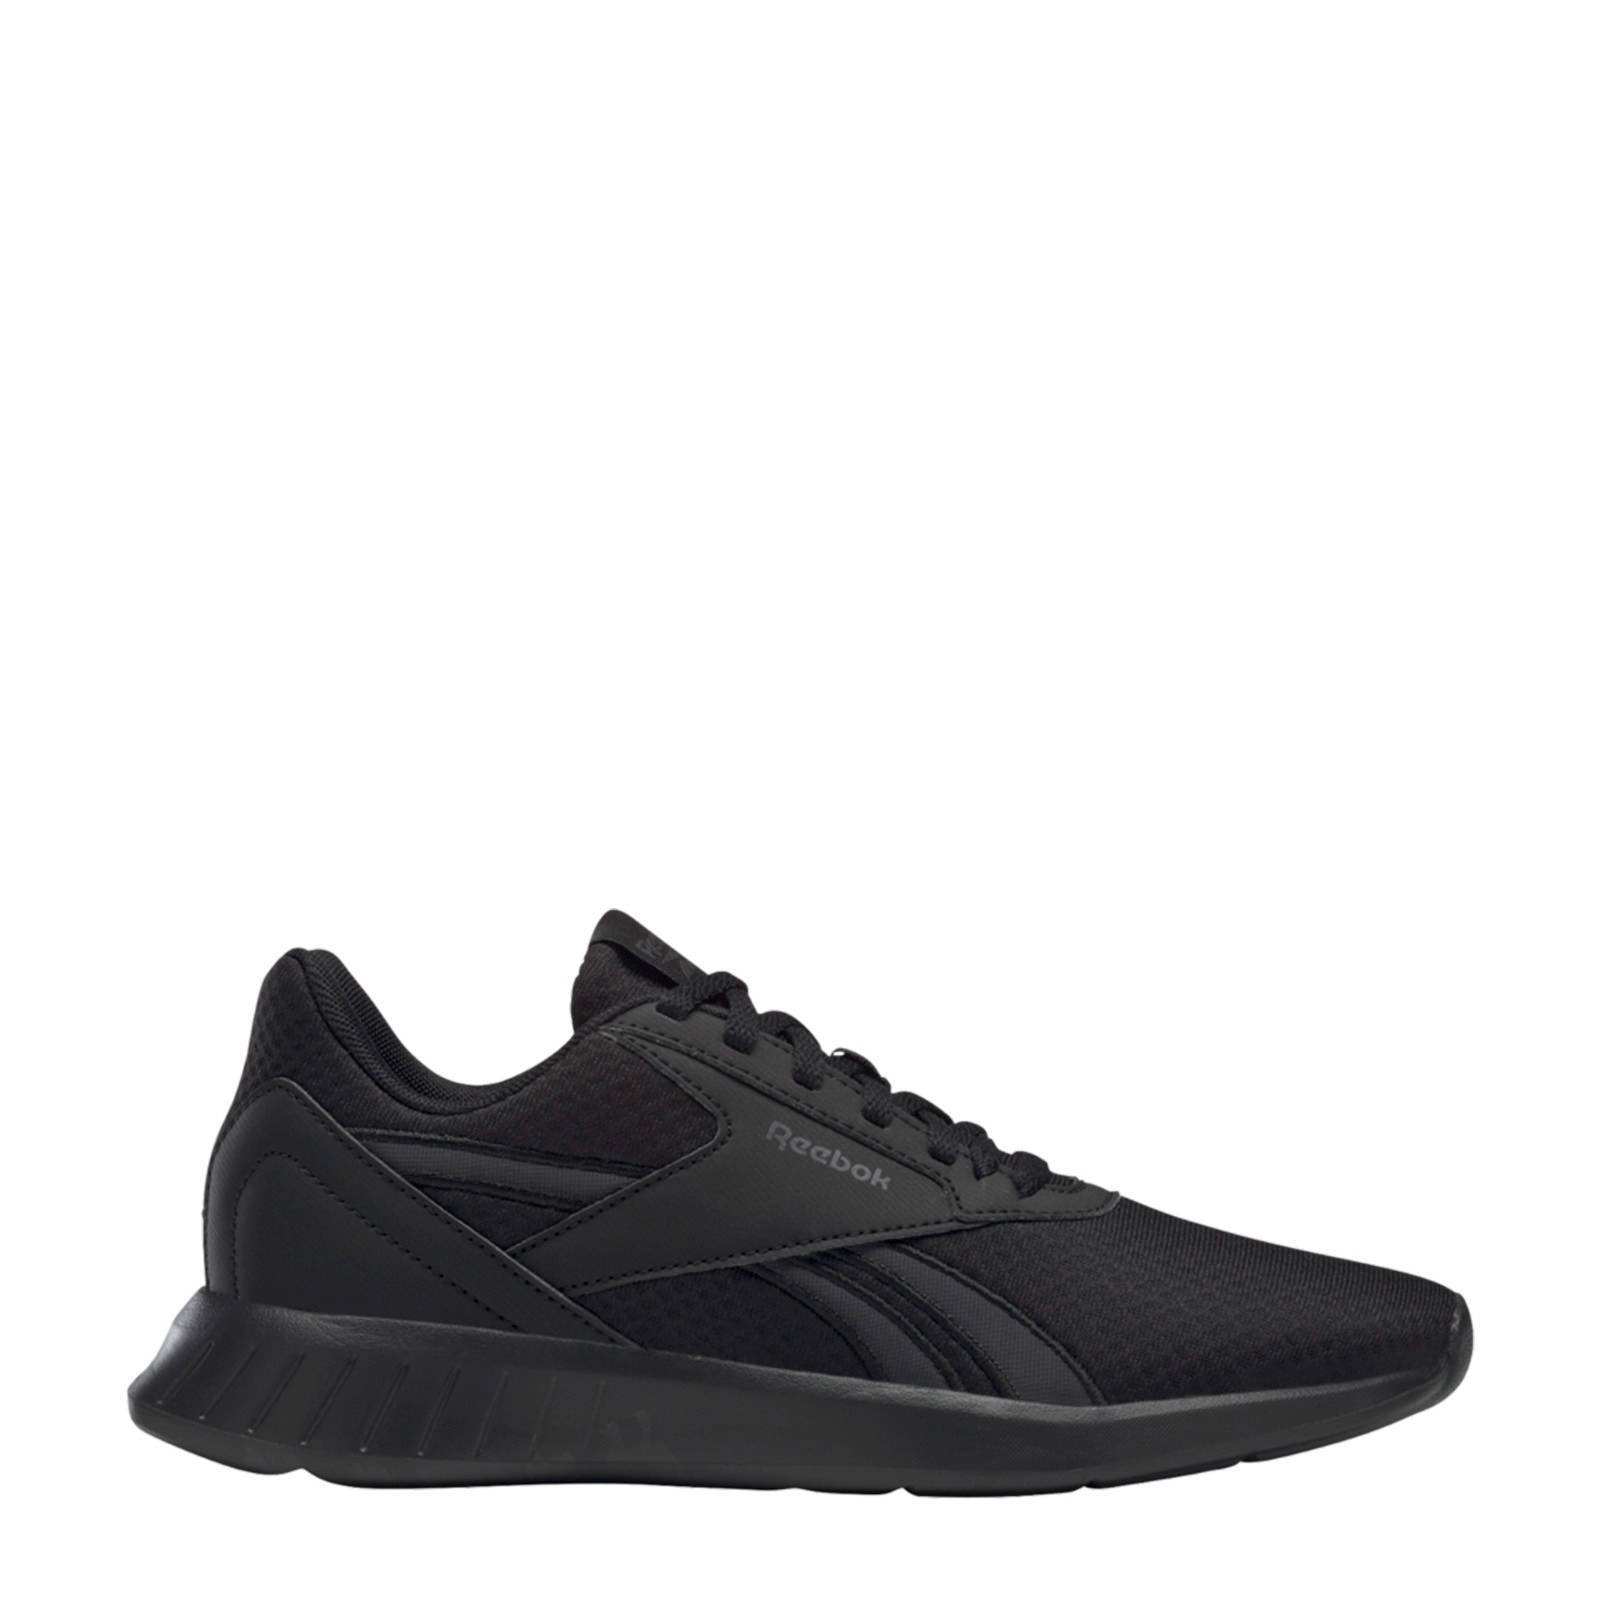 Reebok Training Lite 2.0 hardloopschoenen zwart/grijs online kopen